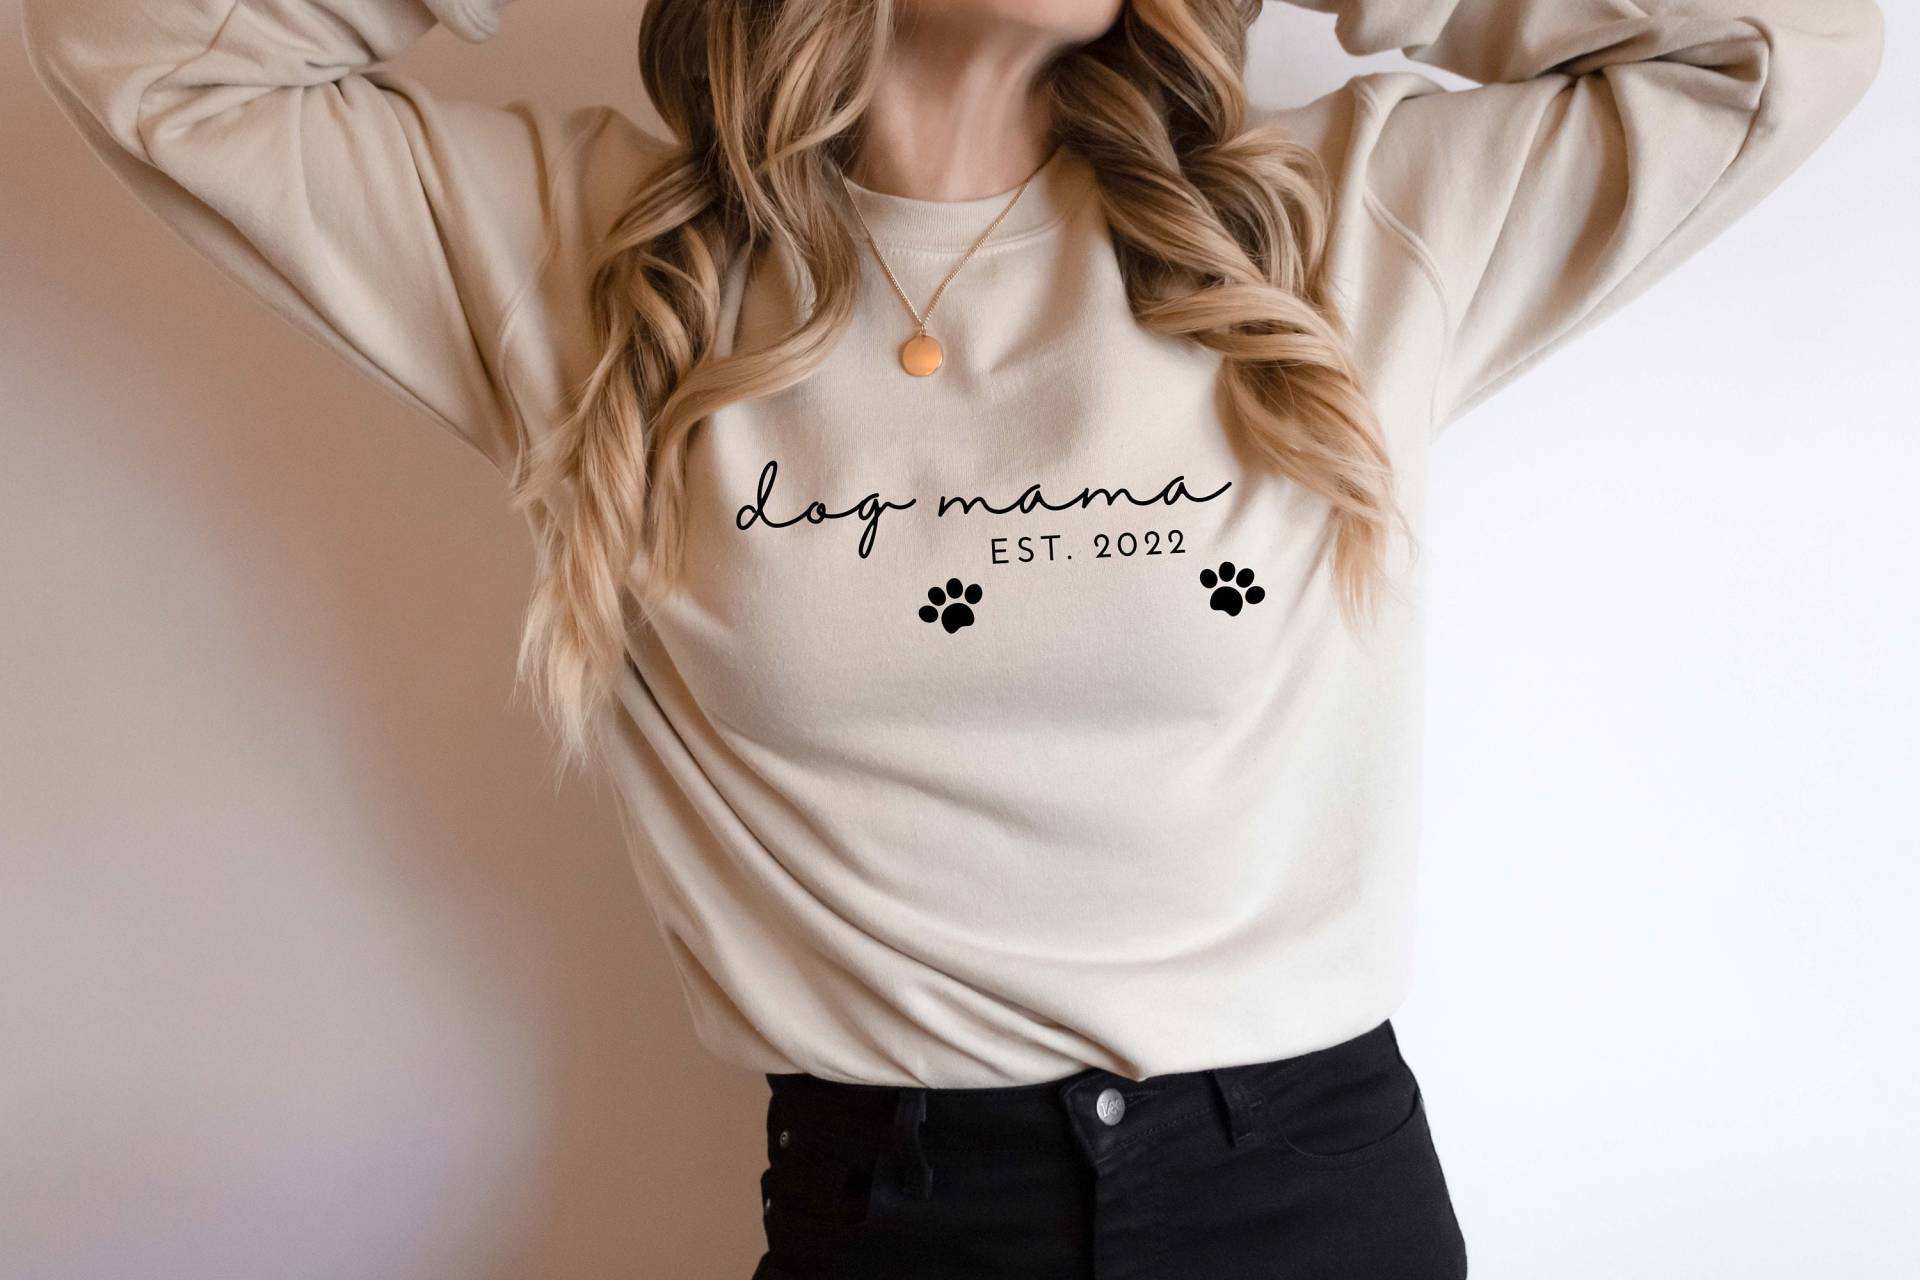 Hunde Mama Est. 2022 Crewneck Sweatshirt, T-Shirt, Geschenk Für Hundeliebhaber, Pullover Unisex von Lifechangedesigns